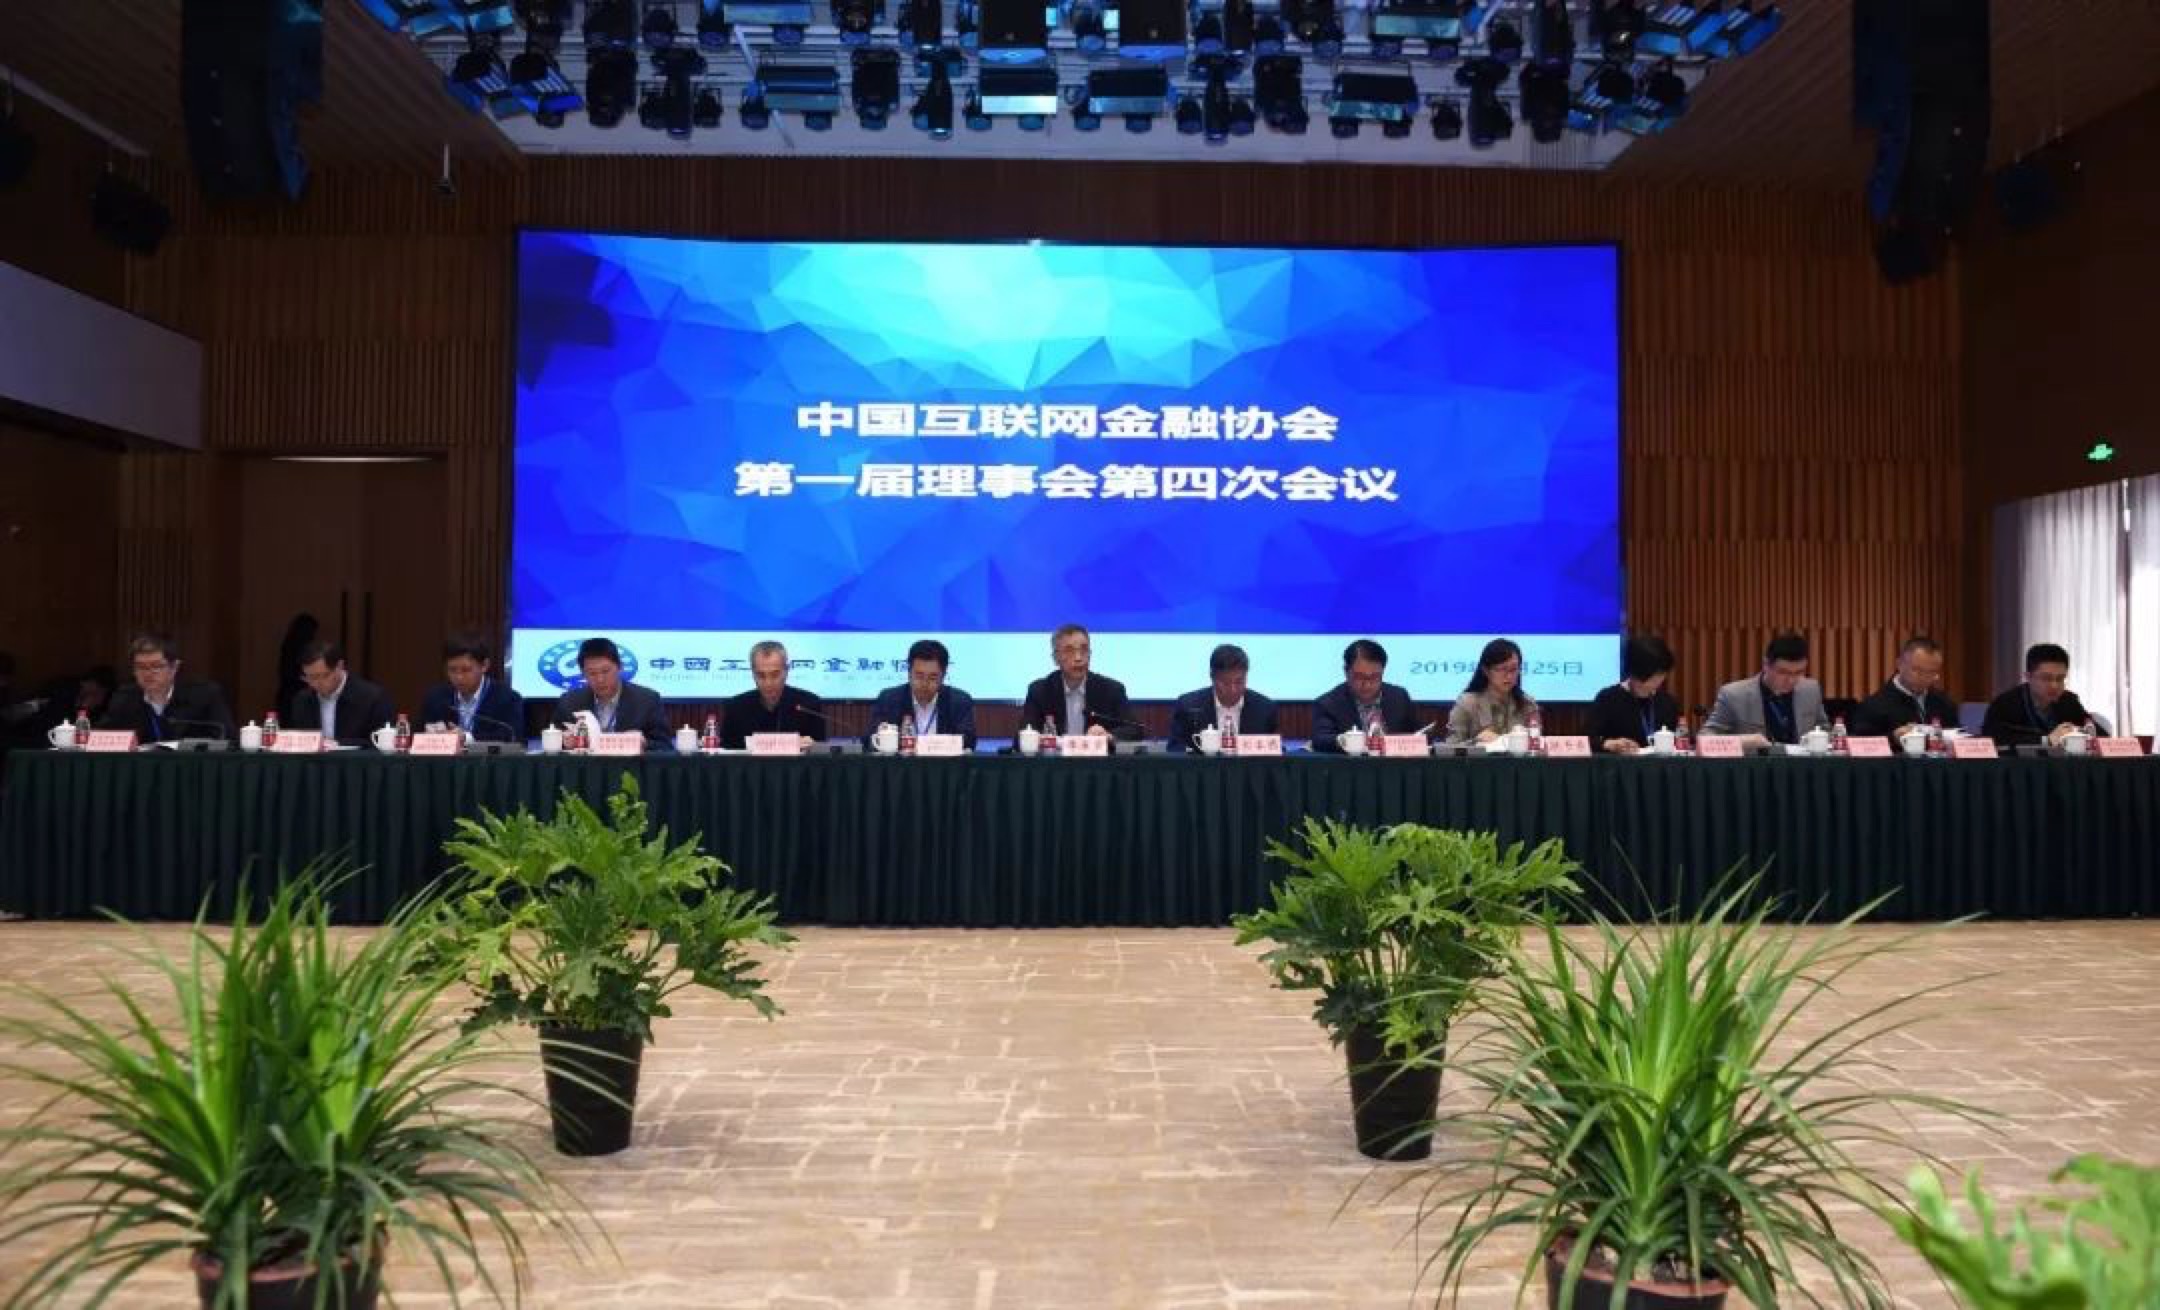 中国互金协会召开第一届理事会第四次会议审议通过团体标准管理办法等